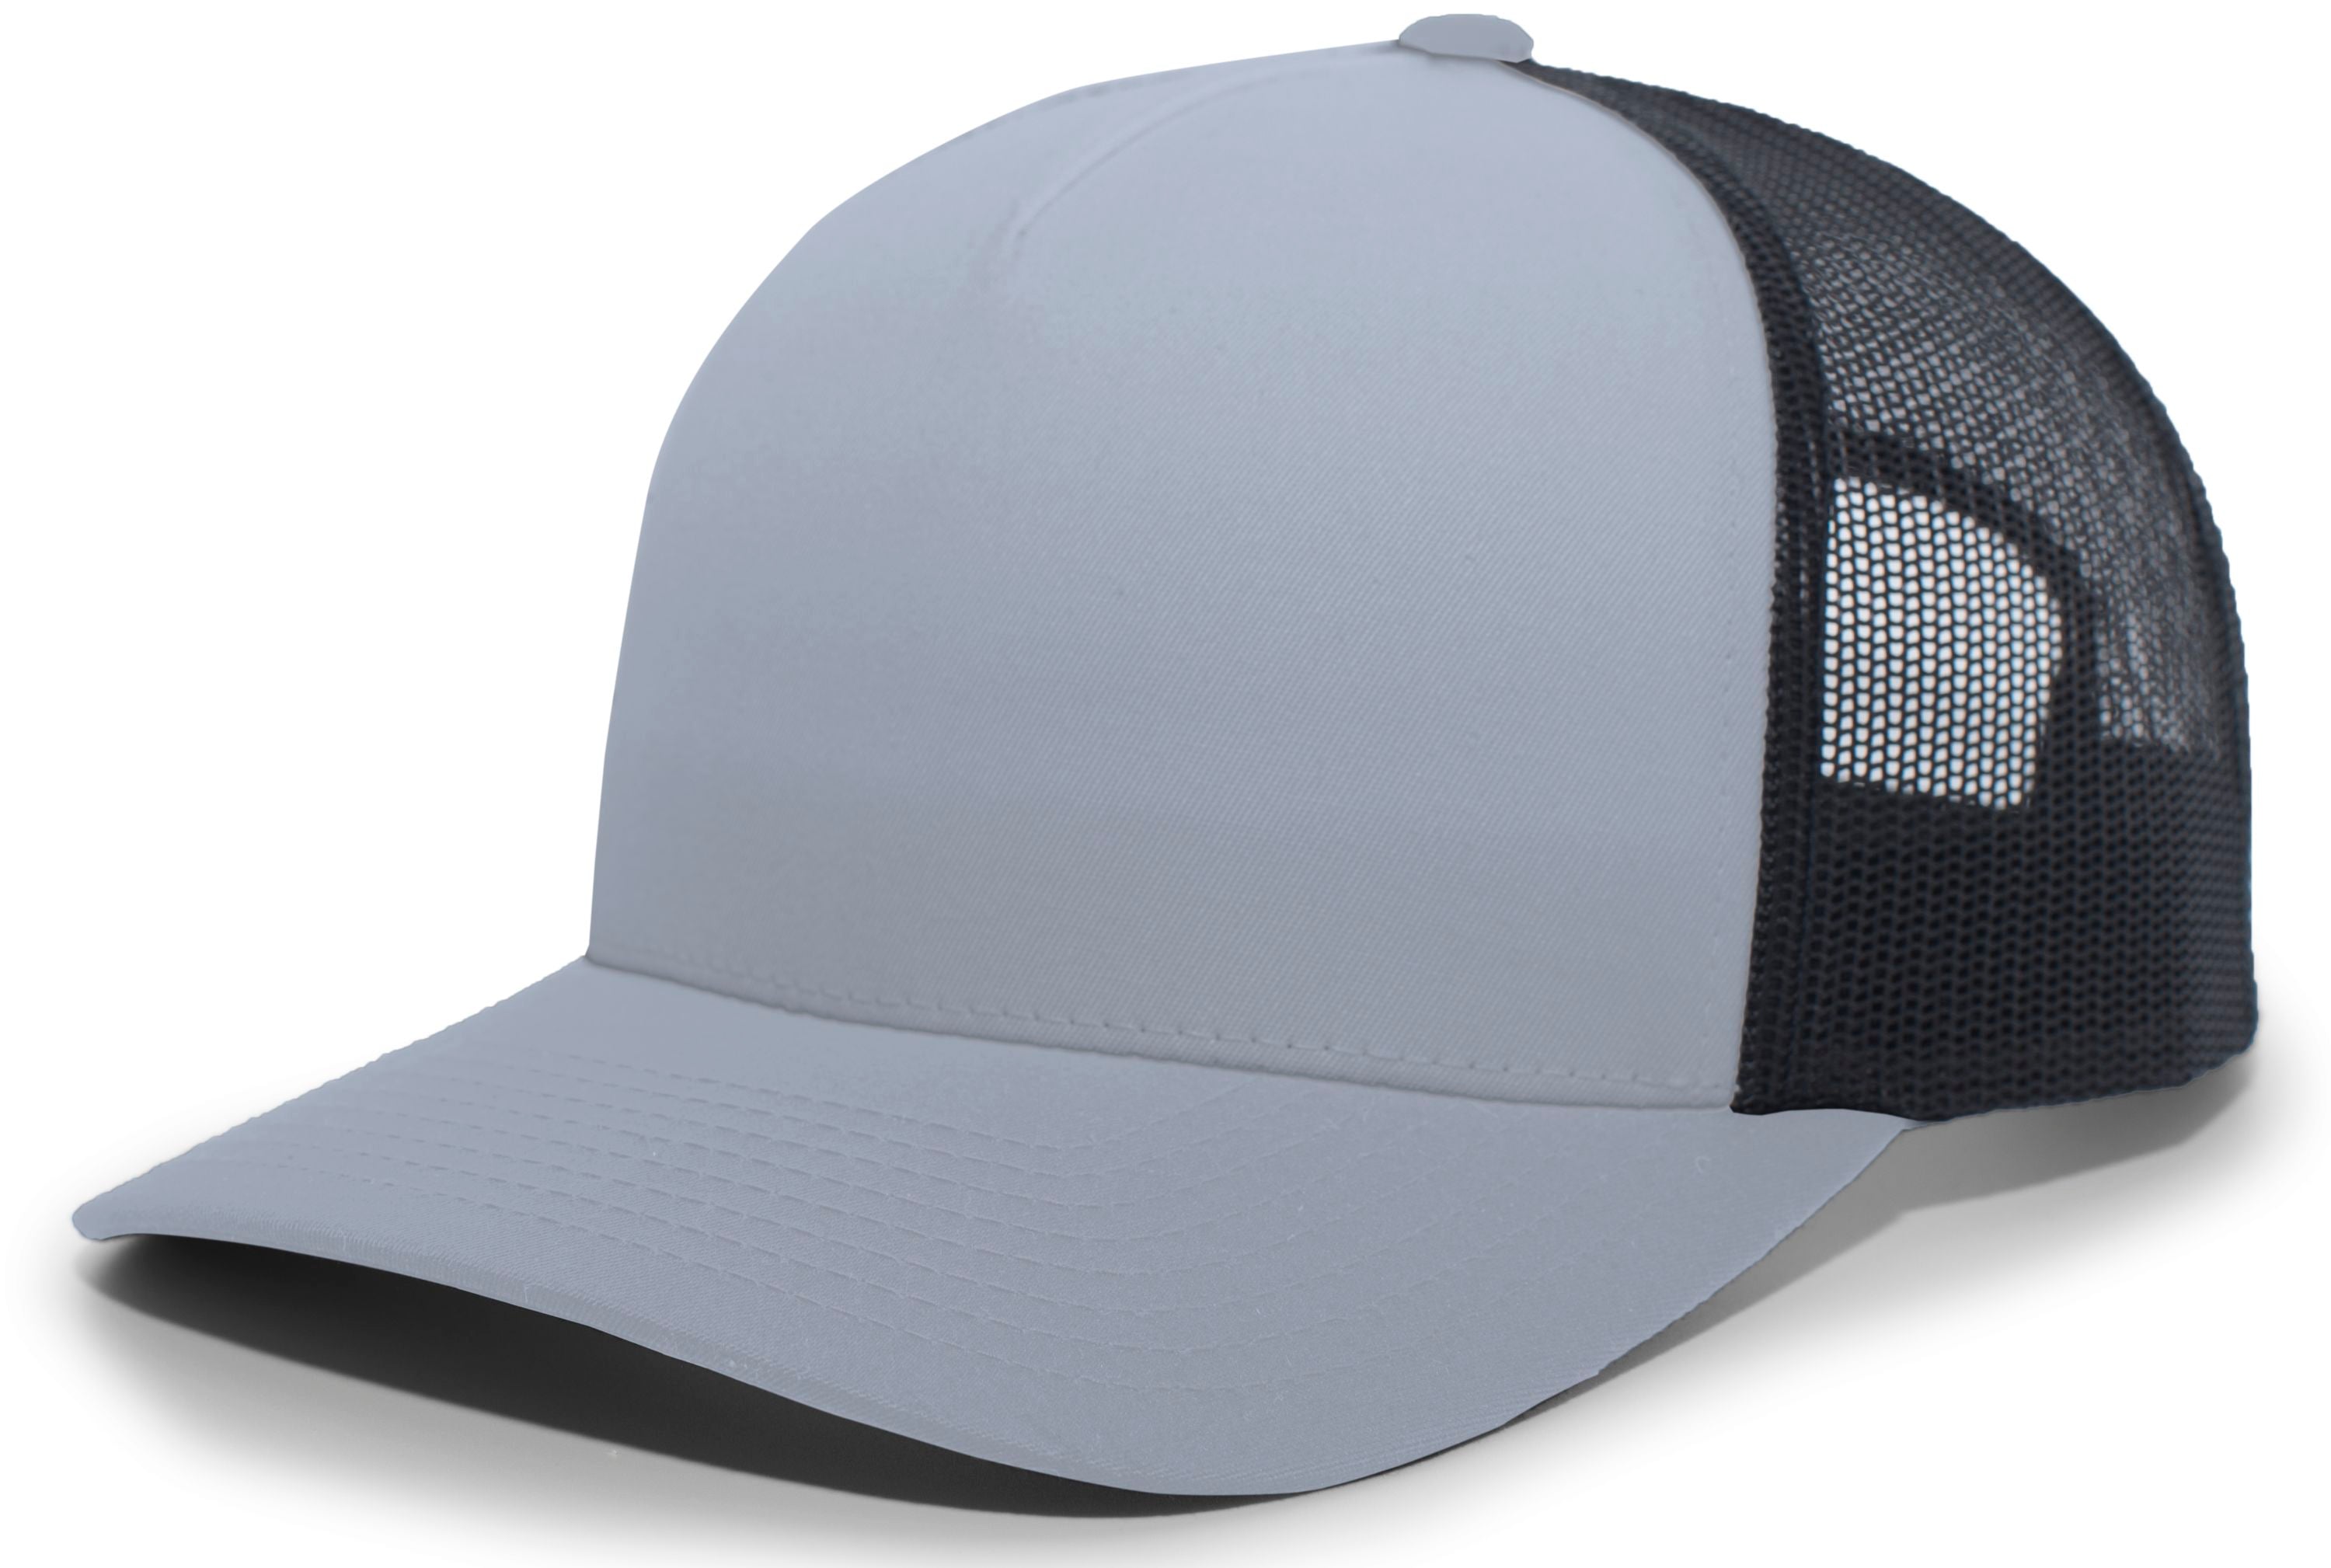 Pacific Headwear 5-panel Trucker Snapback Cap